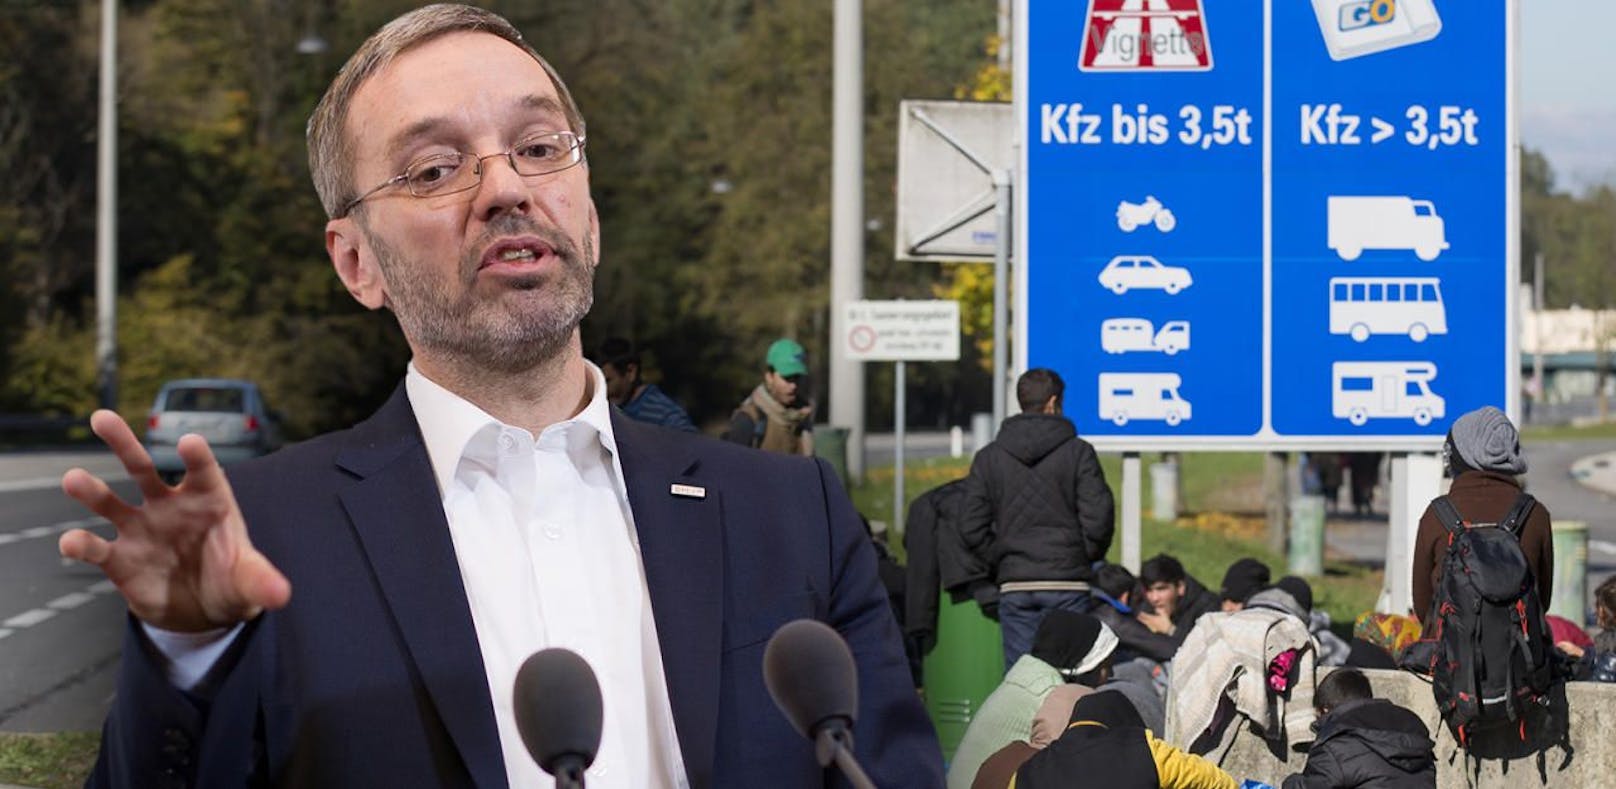 Die FPÖ hat ein 20-Punkte-Maßnahmenpaket im Kampf gegen die Asyl-Krise vorgelegt.